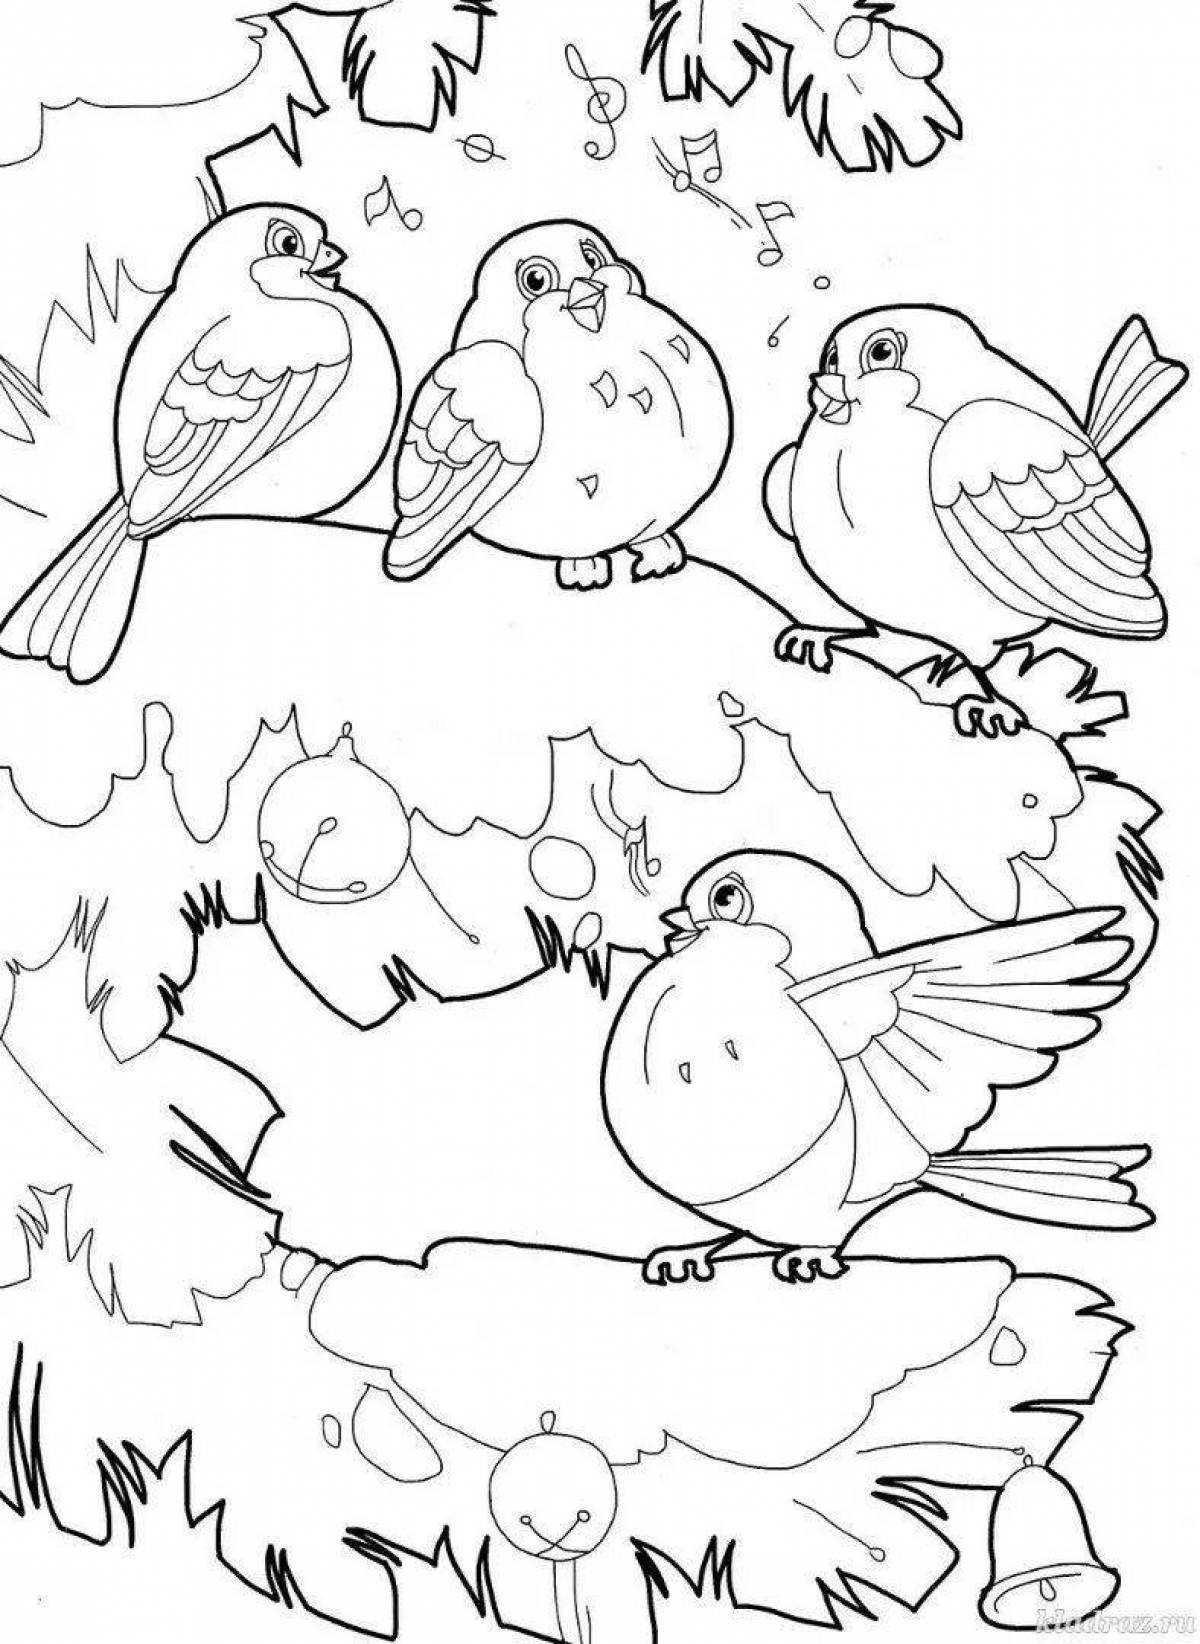 Coloring book beckoning winter birds for preschoolers